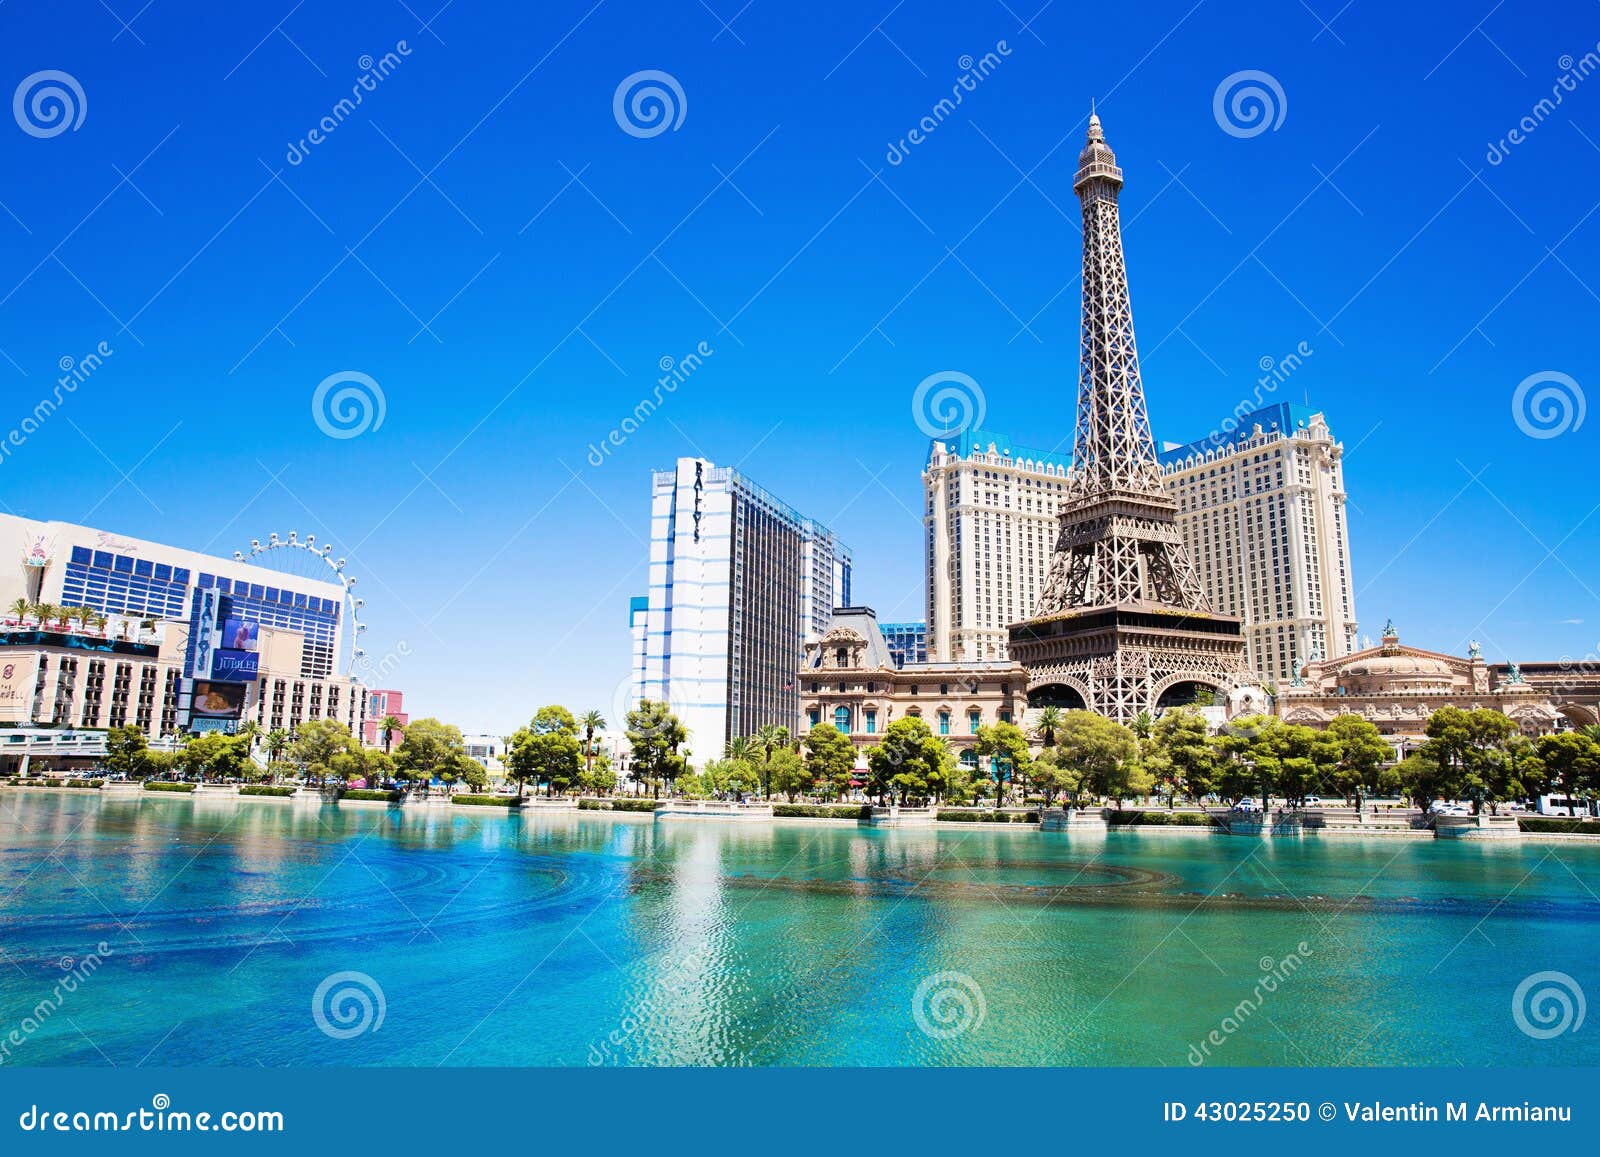 Hotel Paris in Las Vegas editorial image. Image of blue - 43025250